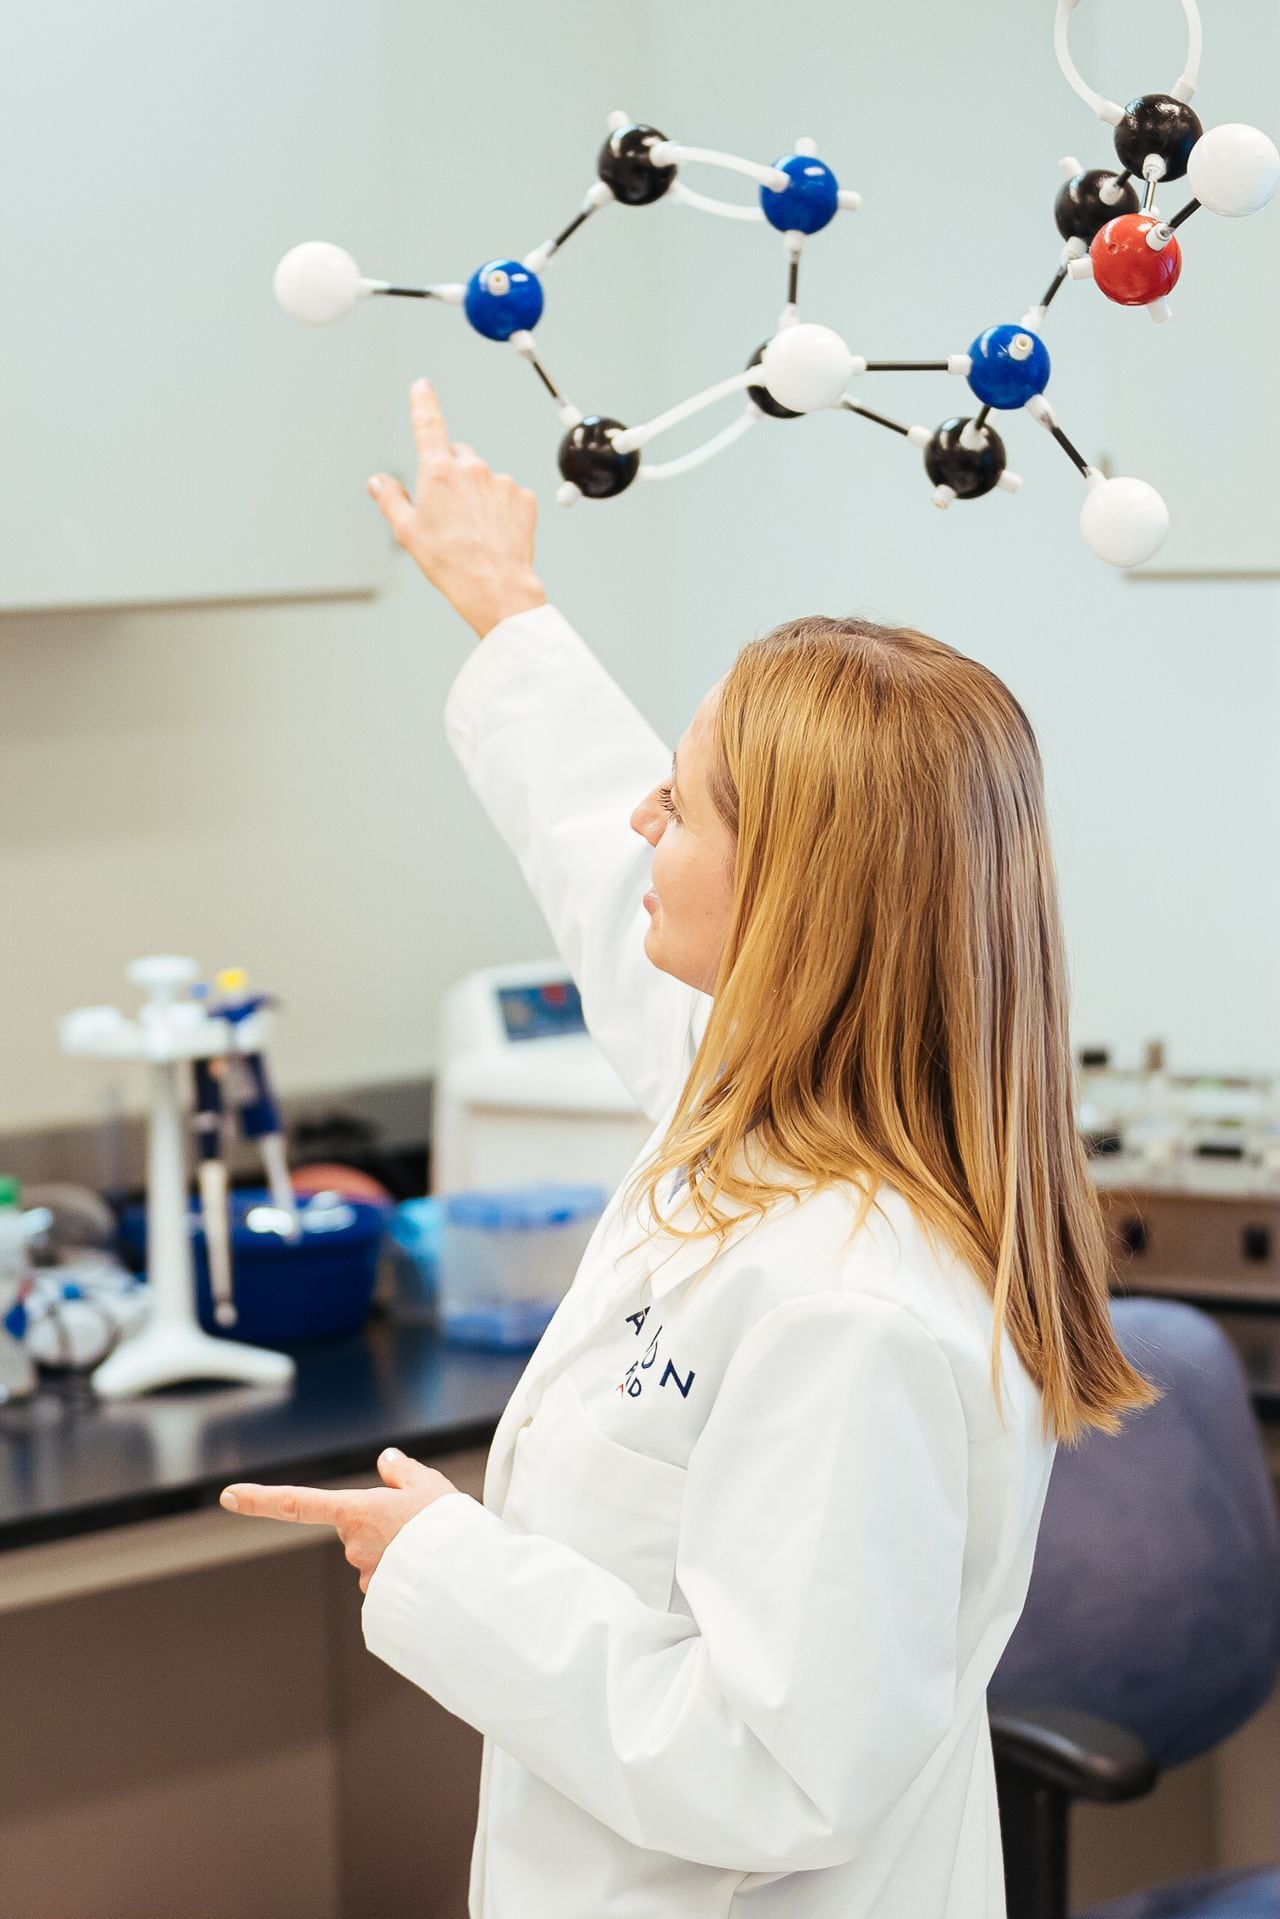 Más del 60 % de la compañía está compuesto por mujeres investigadoras y profesionales en ciencia. Foto: cortesía Avon